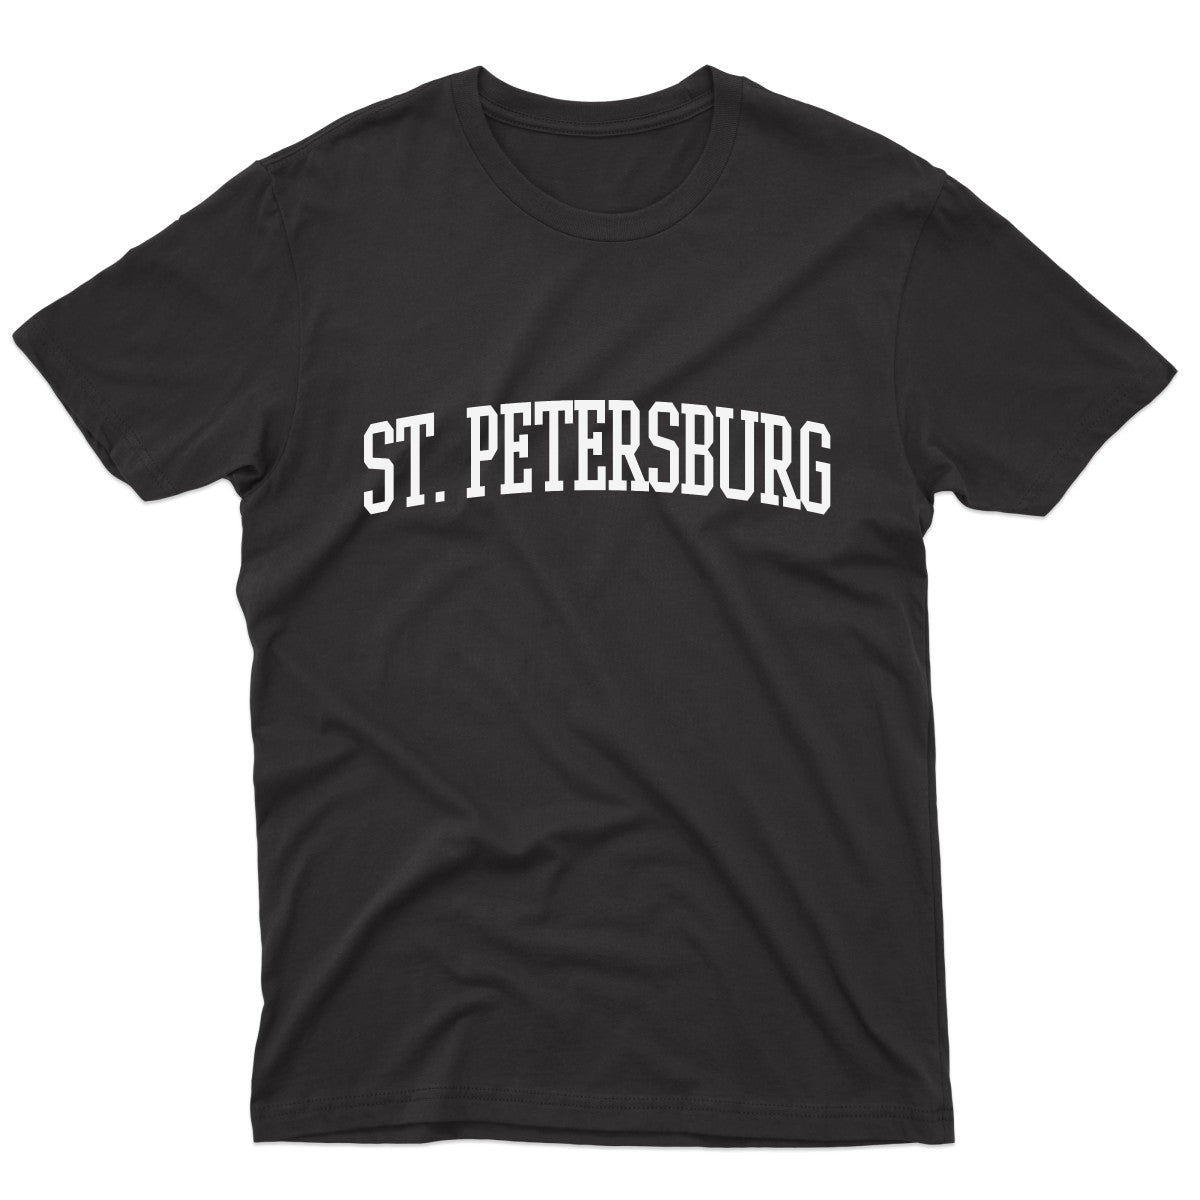 St. Petersburg Men's T-shirt